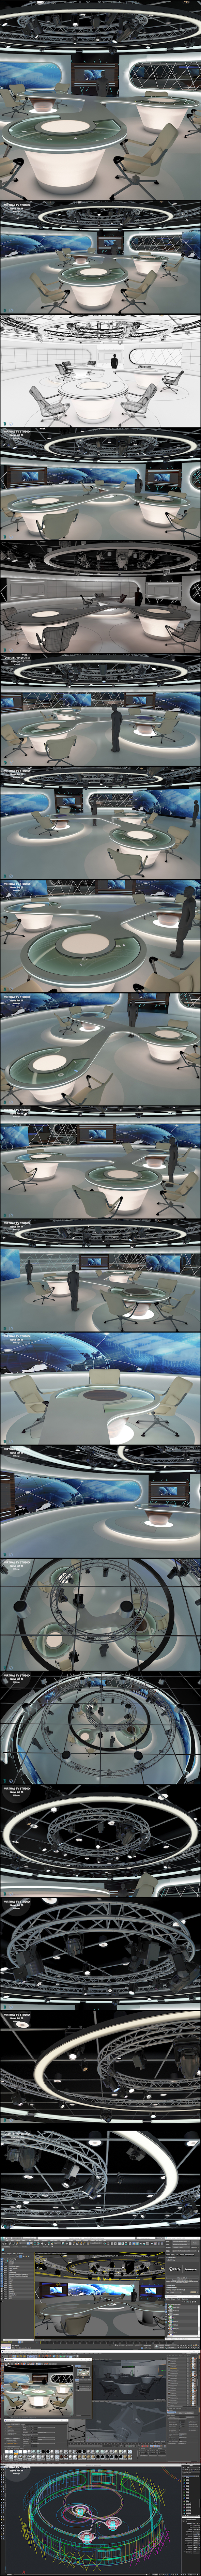 Virtual TV Studio - 3Docean 21546626